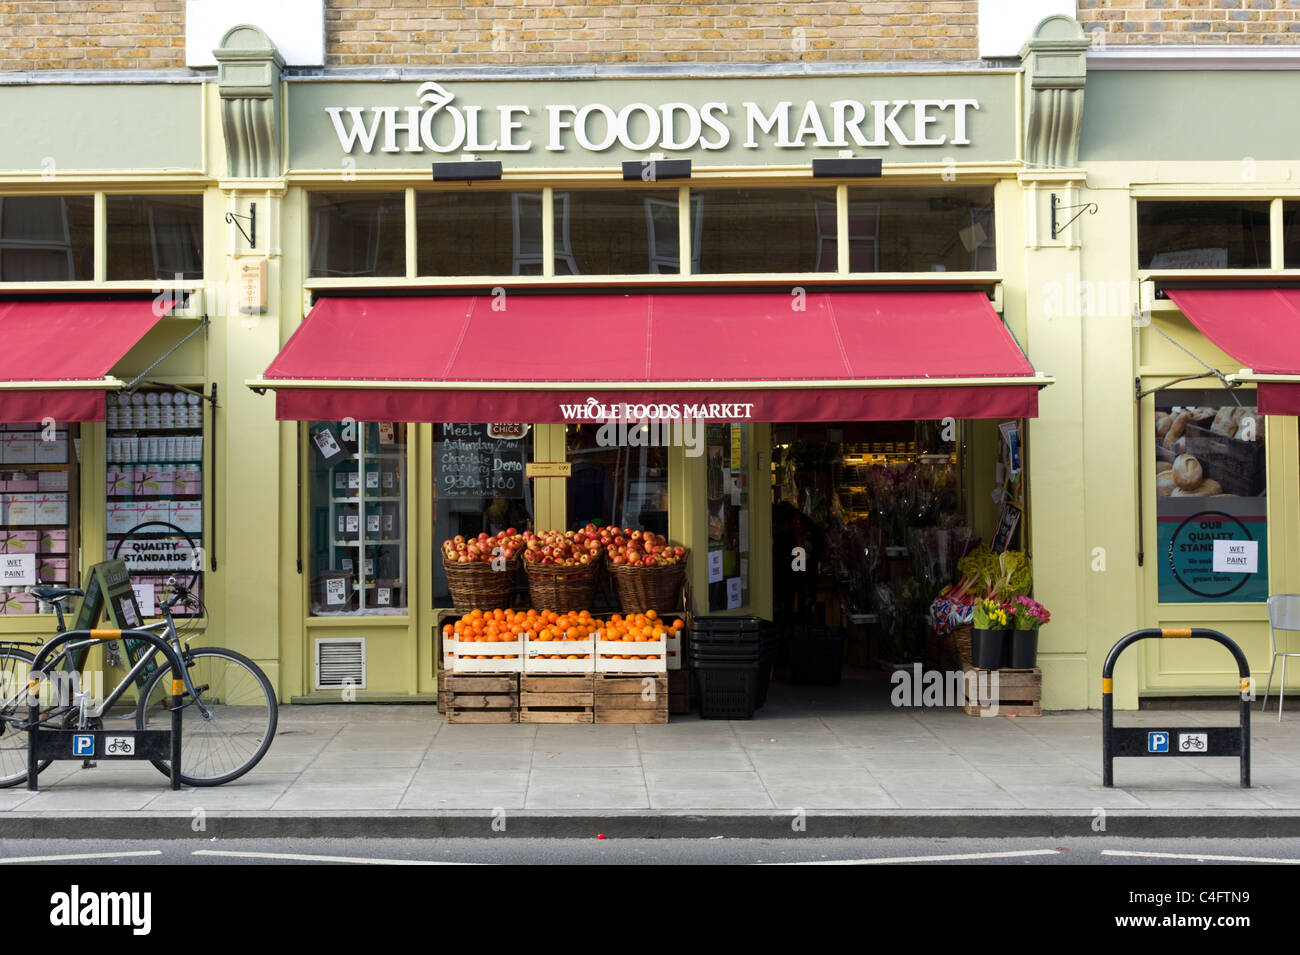 Whole Foods Market in Stoke Newington, London, UK Stock Photo